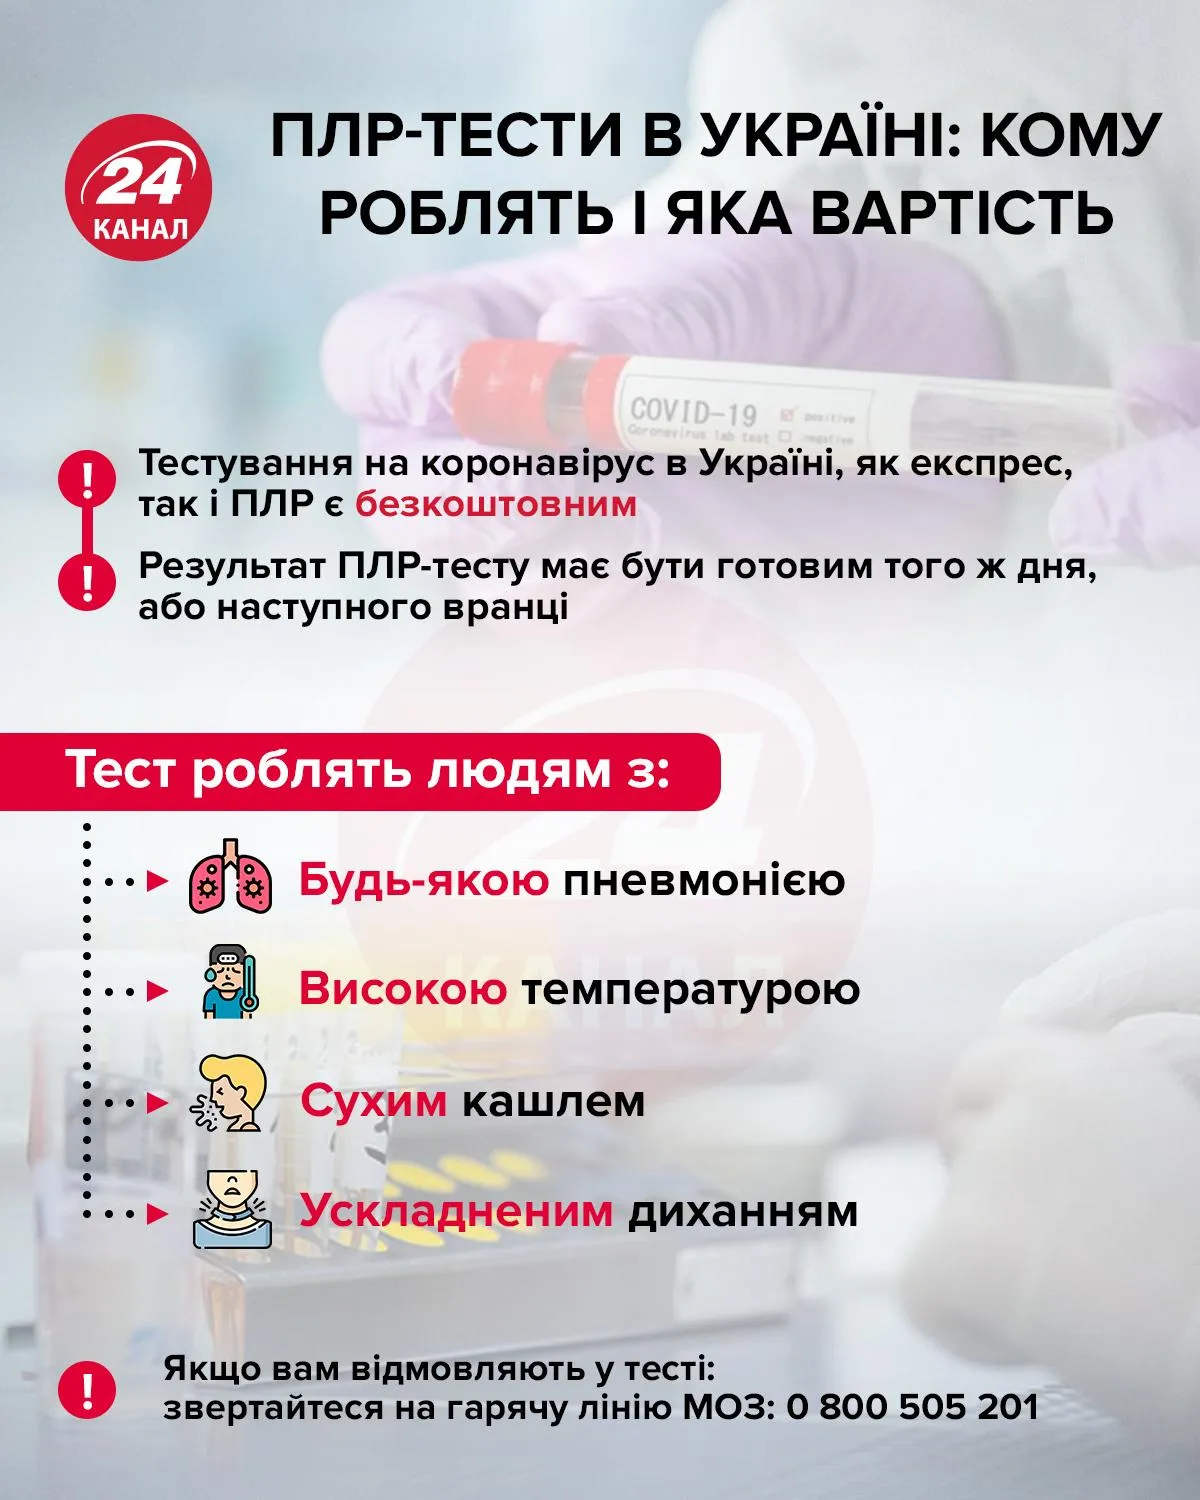 ПЛР-тесты в Украине инфографика 24 канал